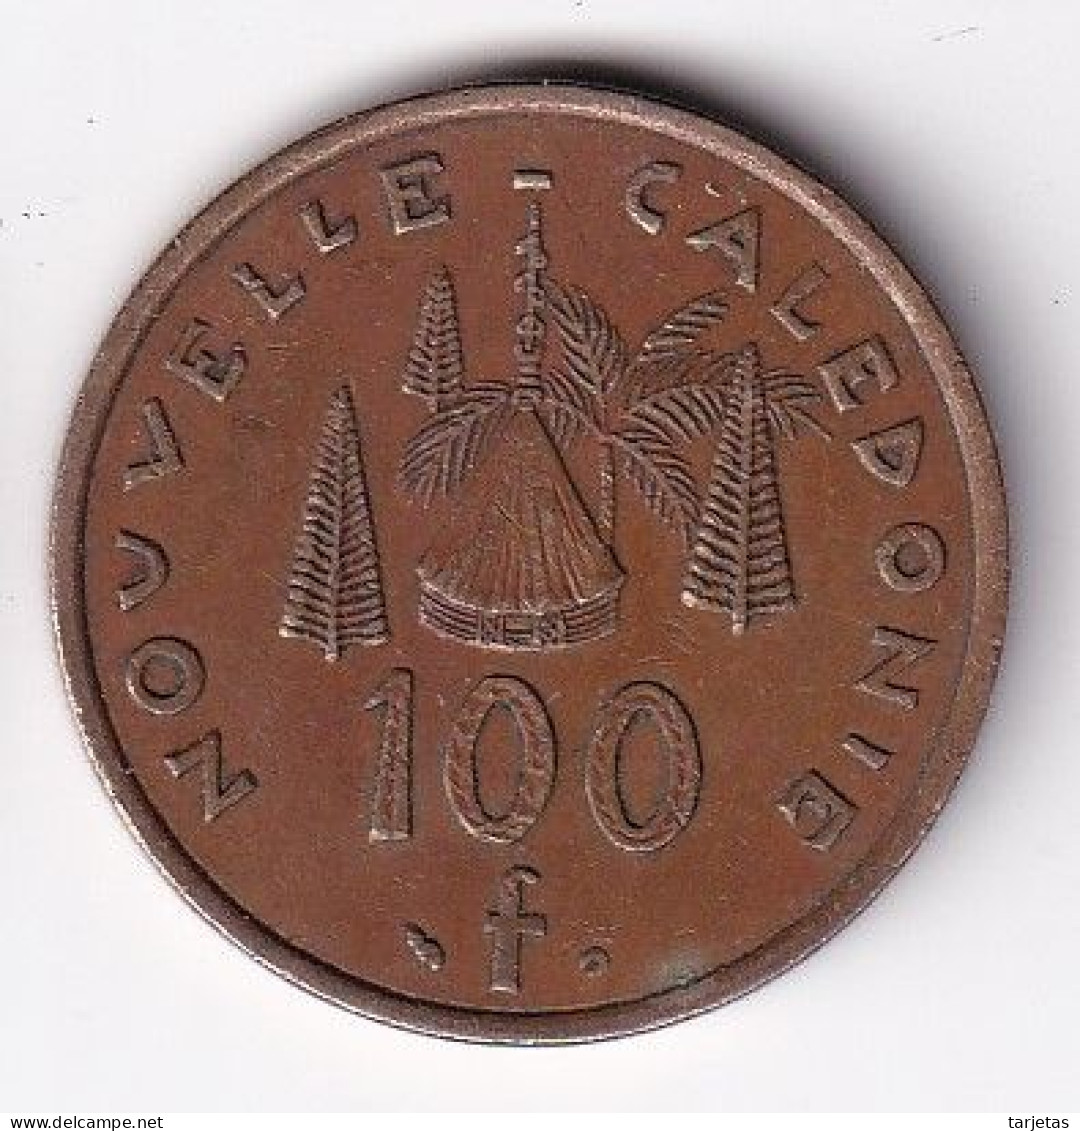 MONEDA DE NUEVA CALEDONIA 100 FRANCS DEL AÑO 2002 (COIN-MONEDA) - Nouvelle-Calédonie